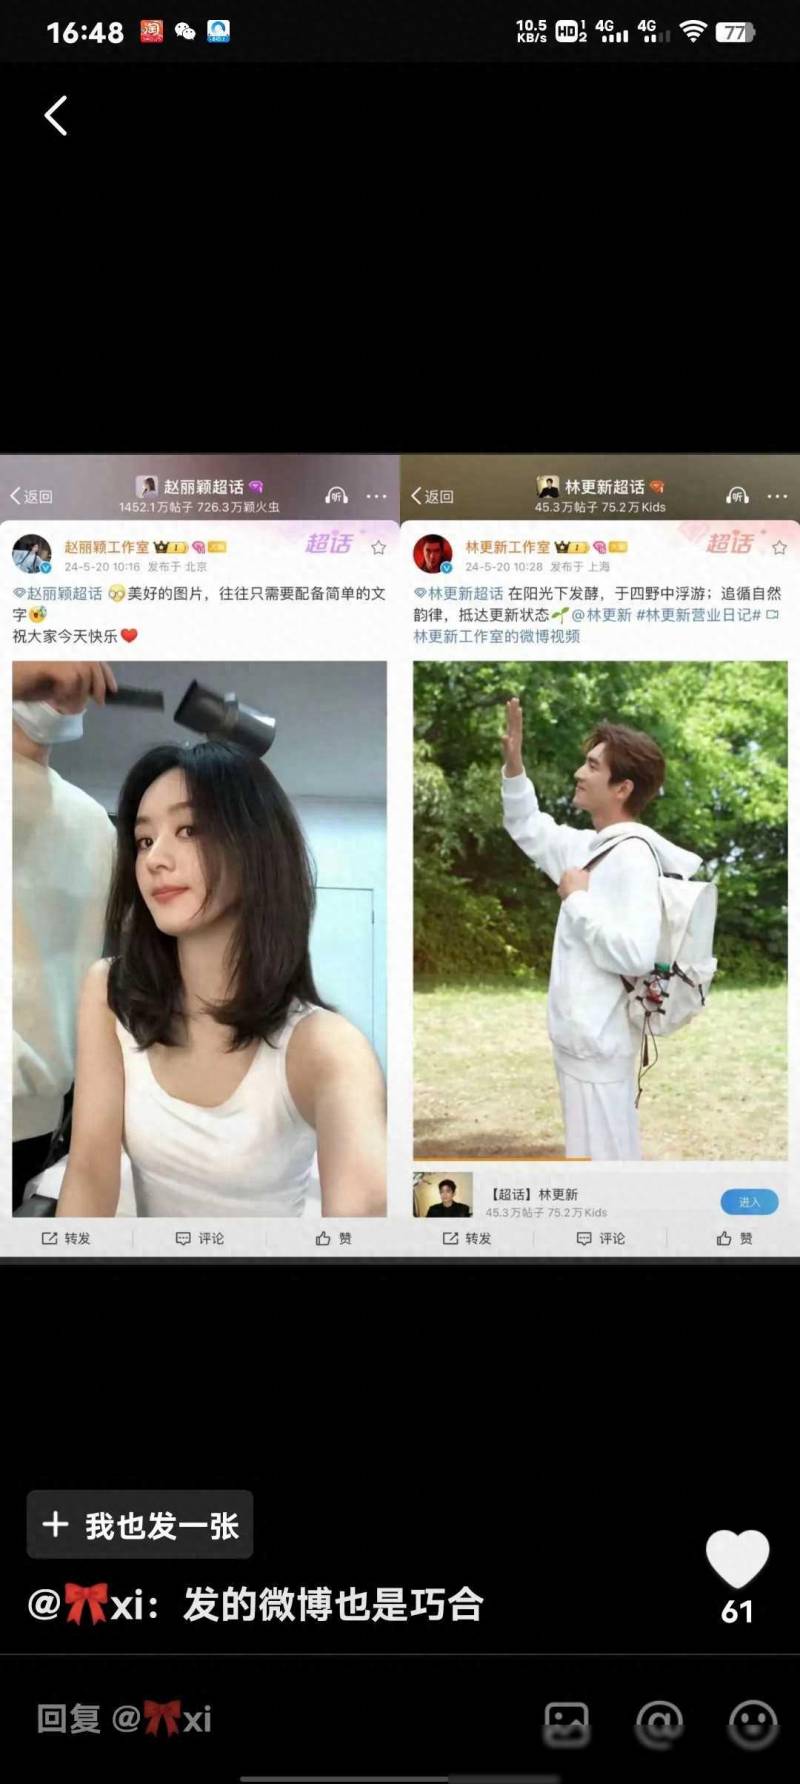 赵丽颖工作室微博发布新动态 背后深意引人猜测